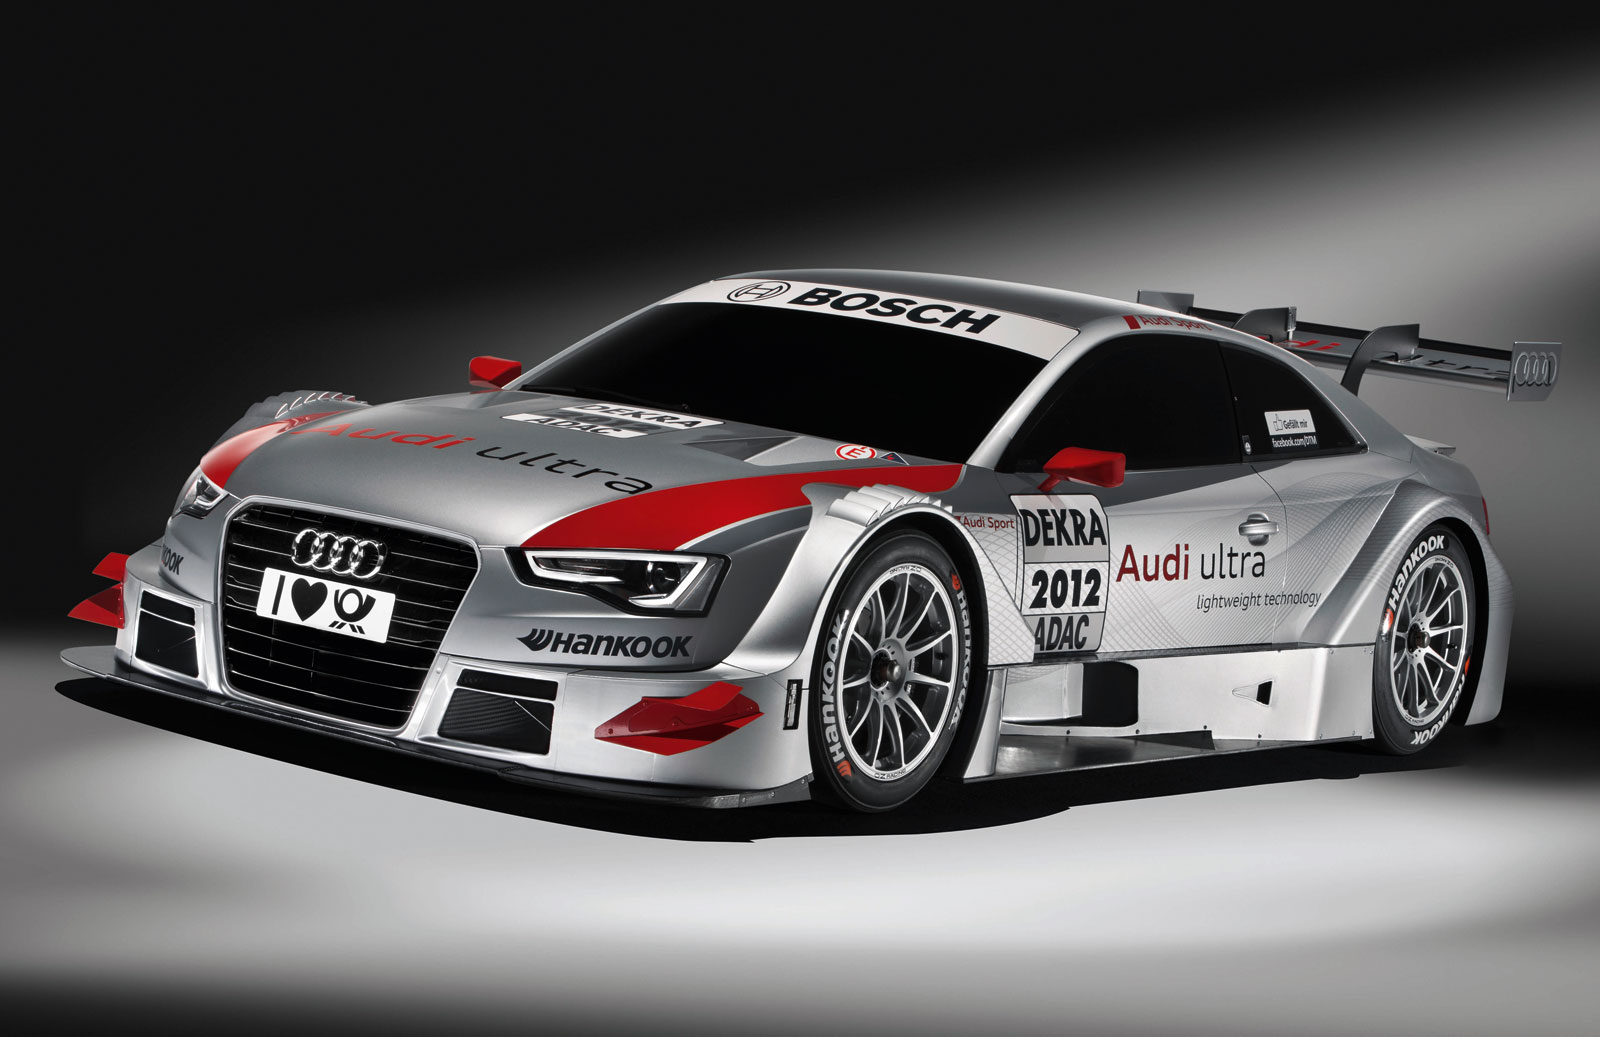 Audi A5 Dtm Race Car HD Wallpaper